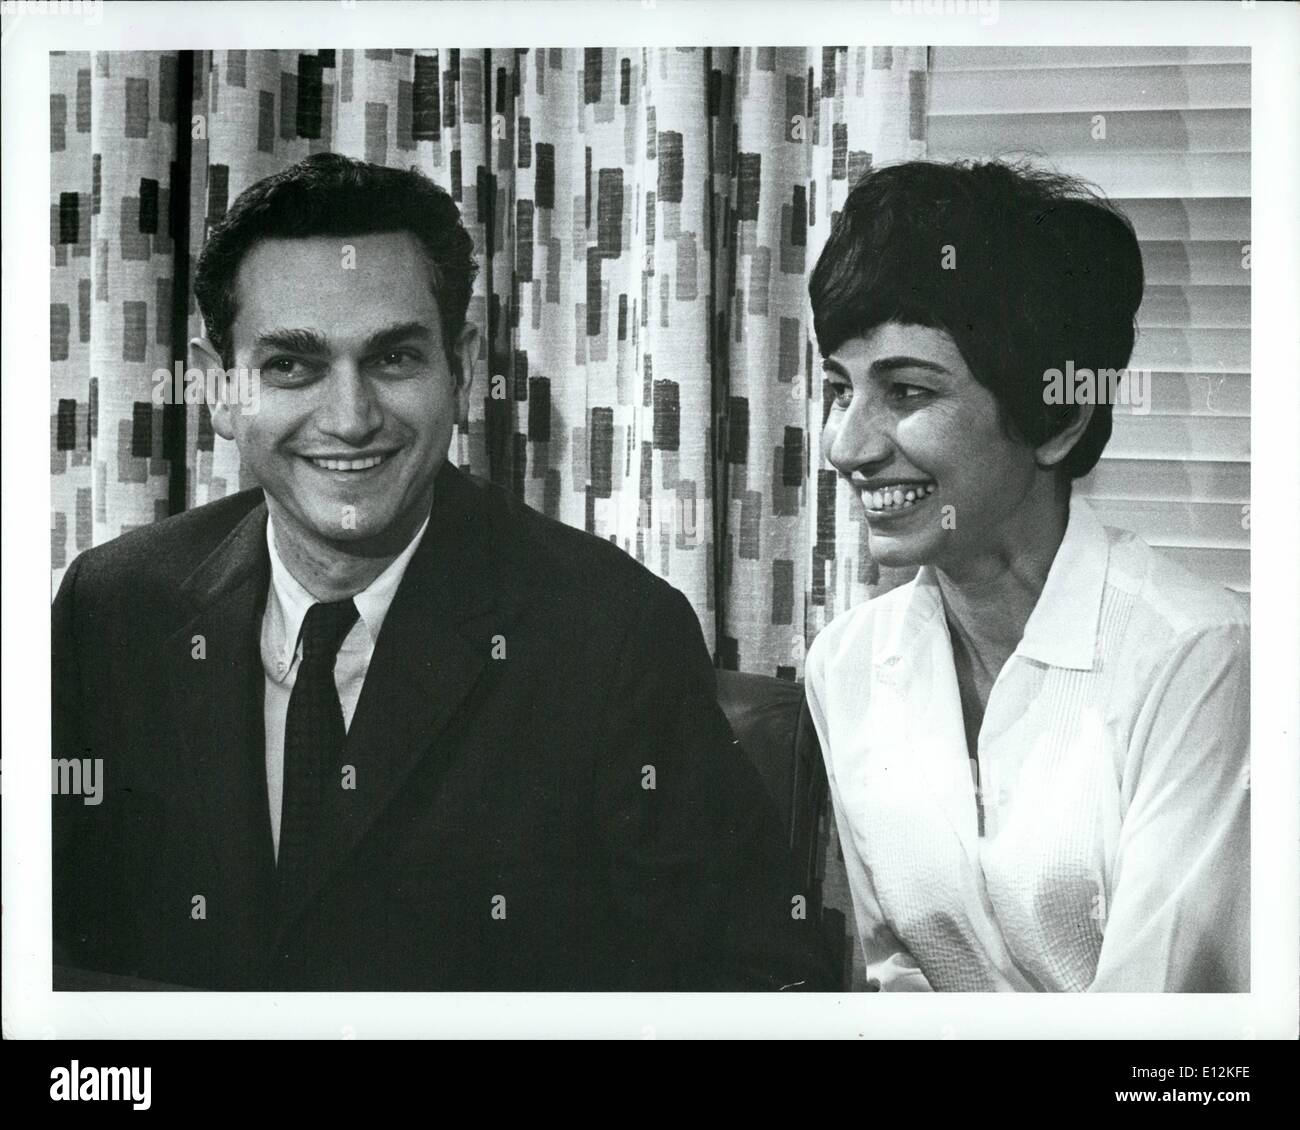 24 février 2012 - Dr. W. Marshall Nirenberg avec son épouse le Dr Perola Zaltzman-Nirenberg. 1968 Prix Nobel de physiologie et médecine. Banque D'Images